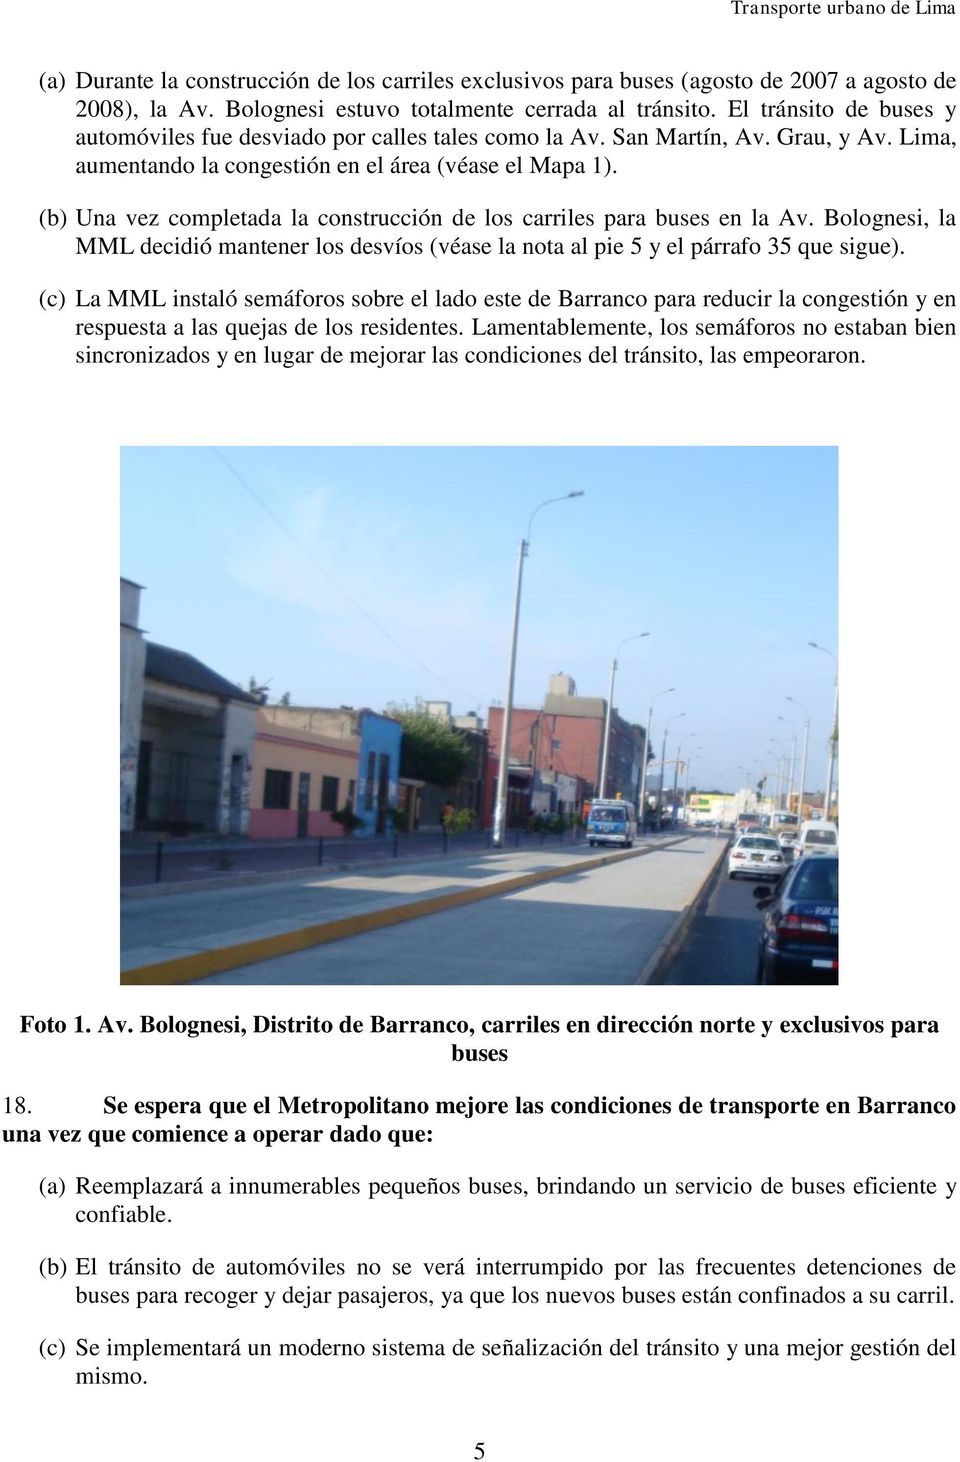 (b) Una vez completada la construcción de los carriles para buses en la Av. Bolognesi, la MML decidió mantener los desvíos (véase la nota al pie 5 y el párrafo 35 que sigue).